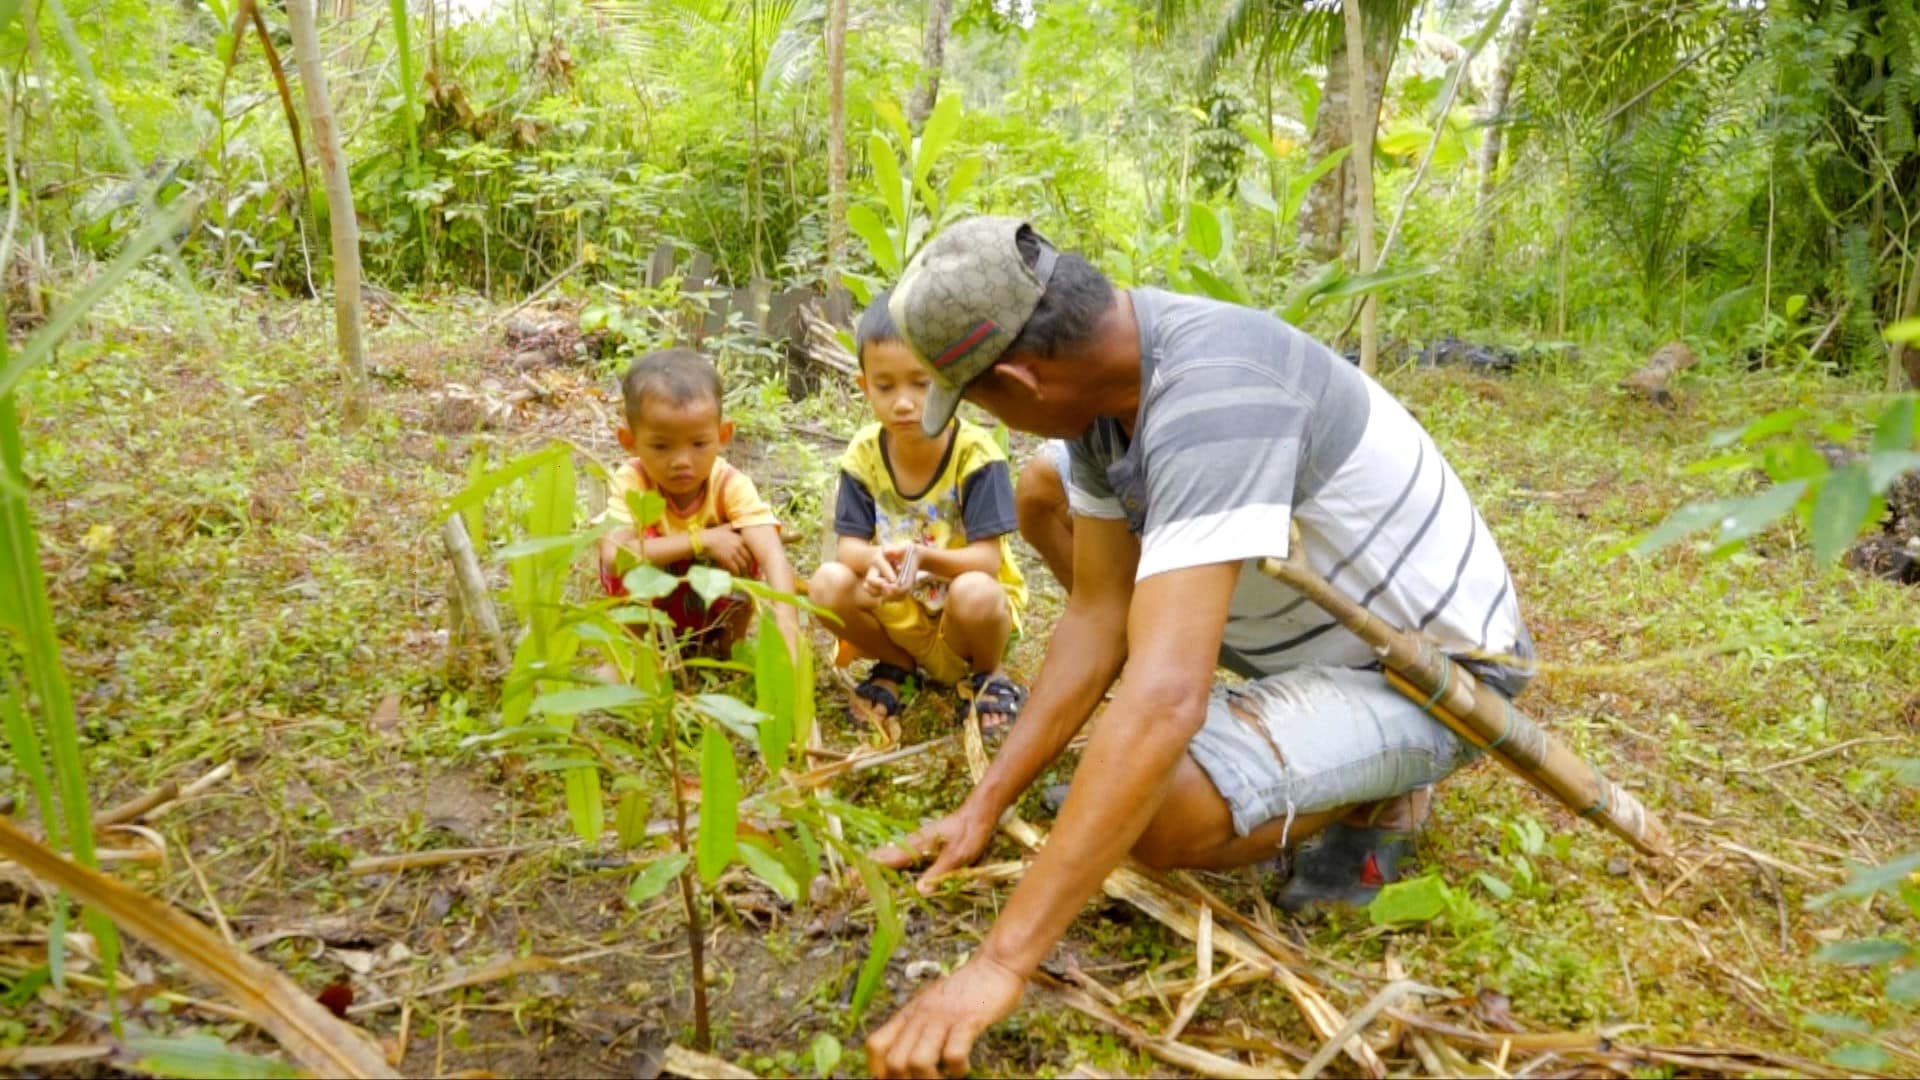 Pasihan zeigt seinen zwei Kinder eine junge Durian-Pflanze